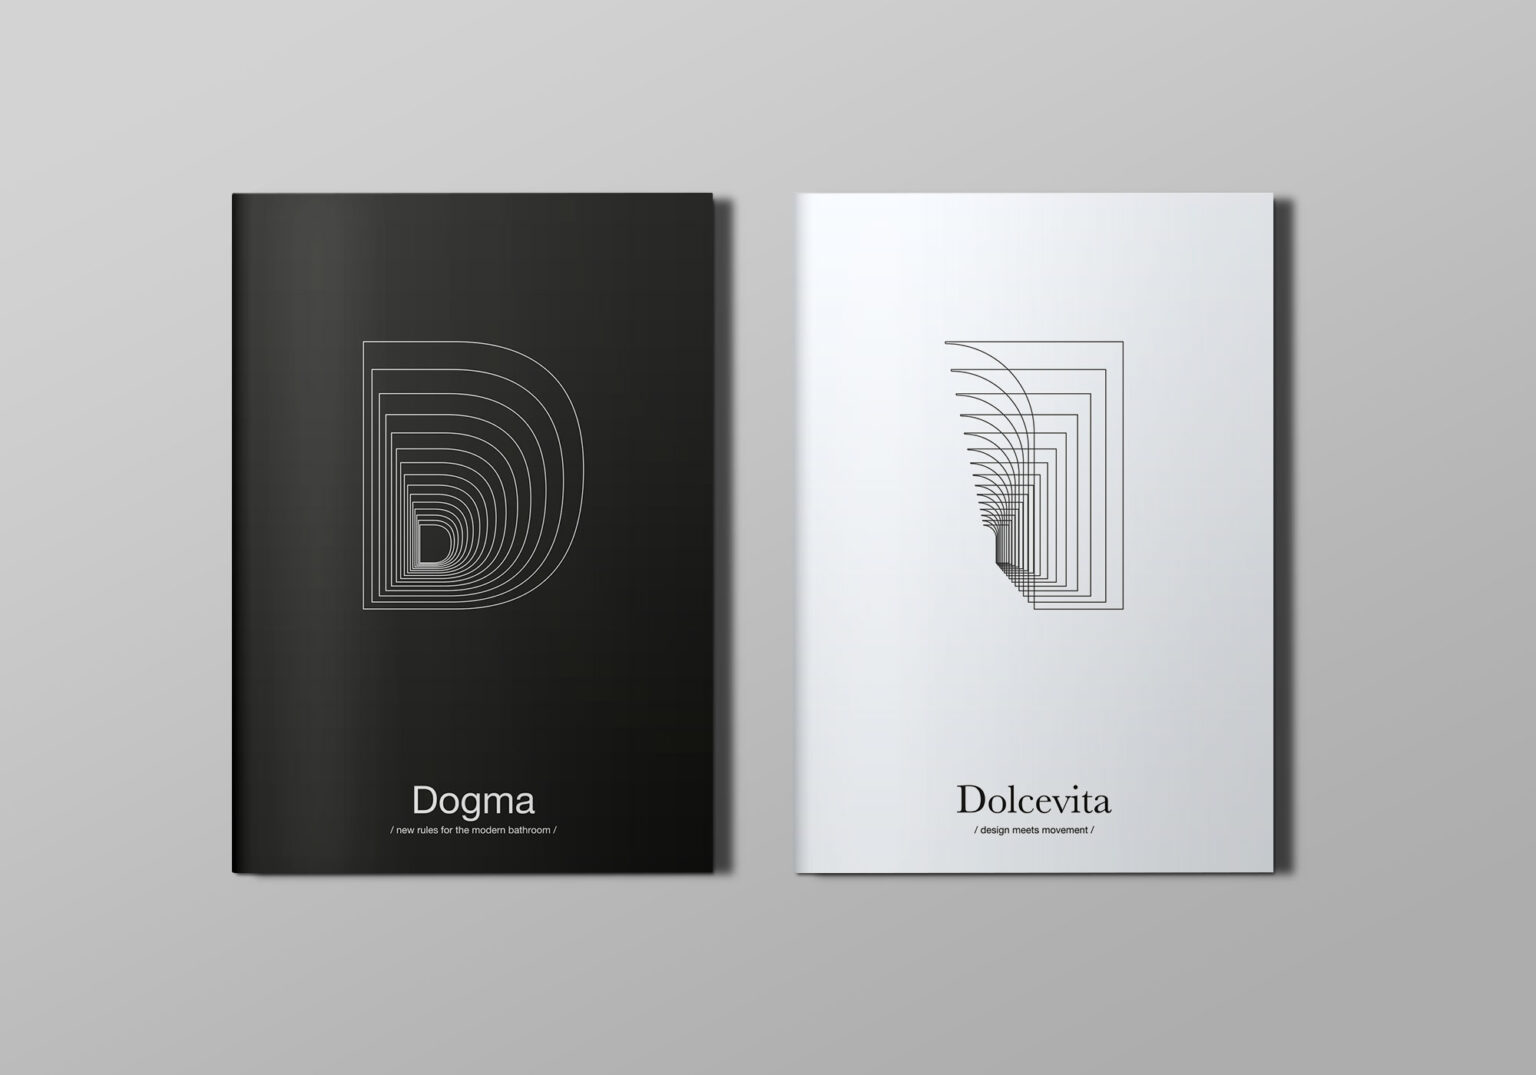 Nuovi cataloghi per le collezioni Dogma e Dolcevita